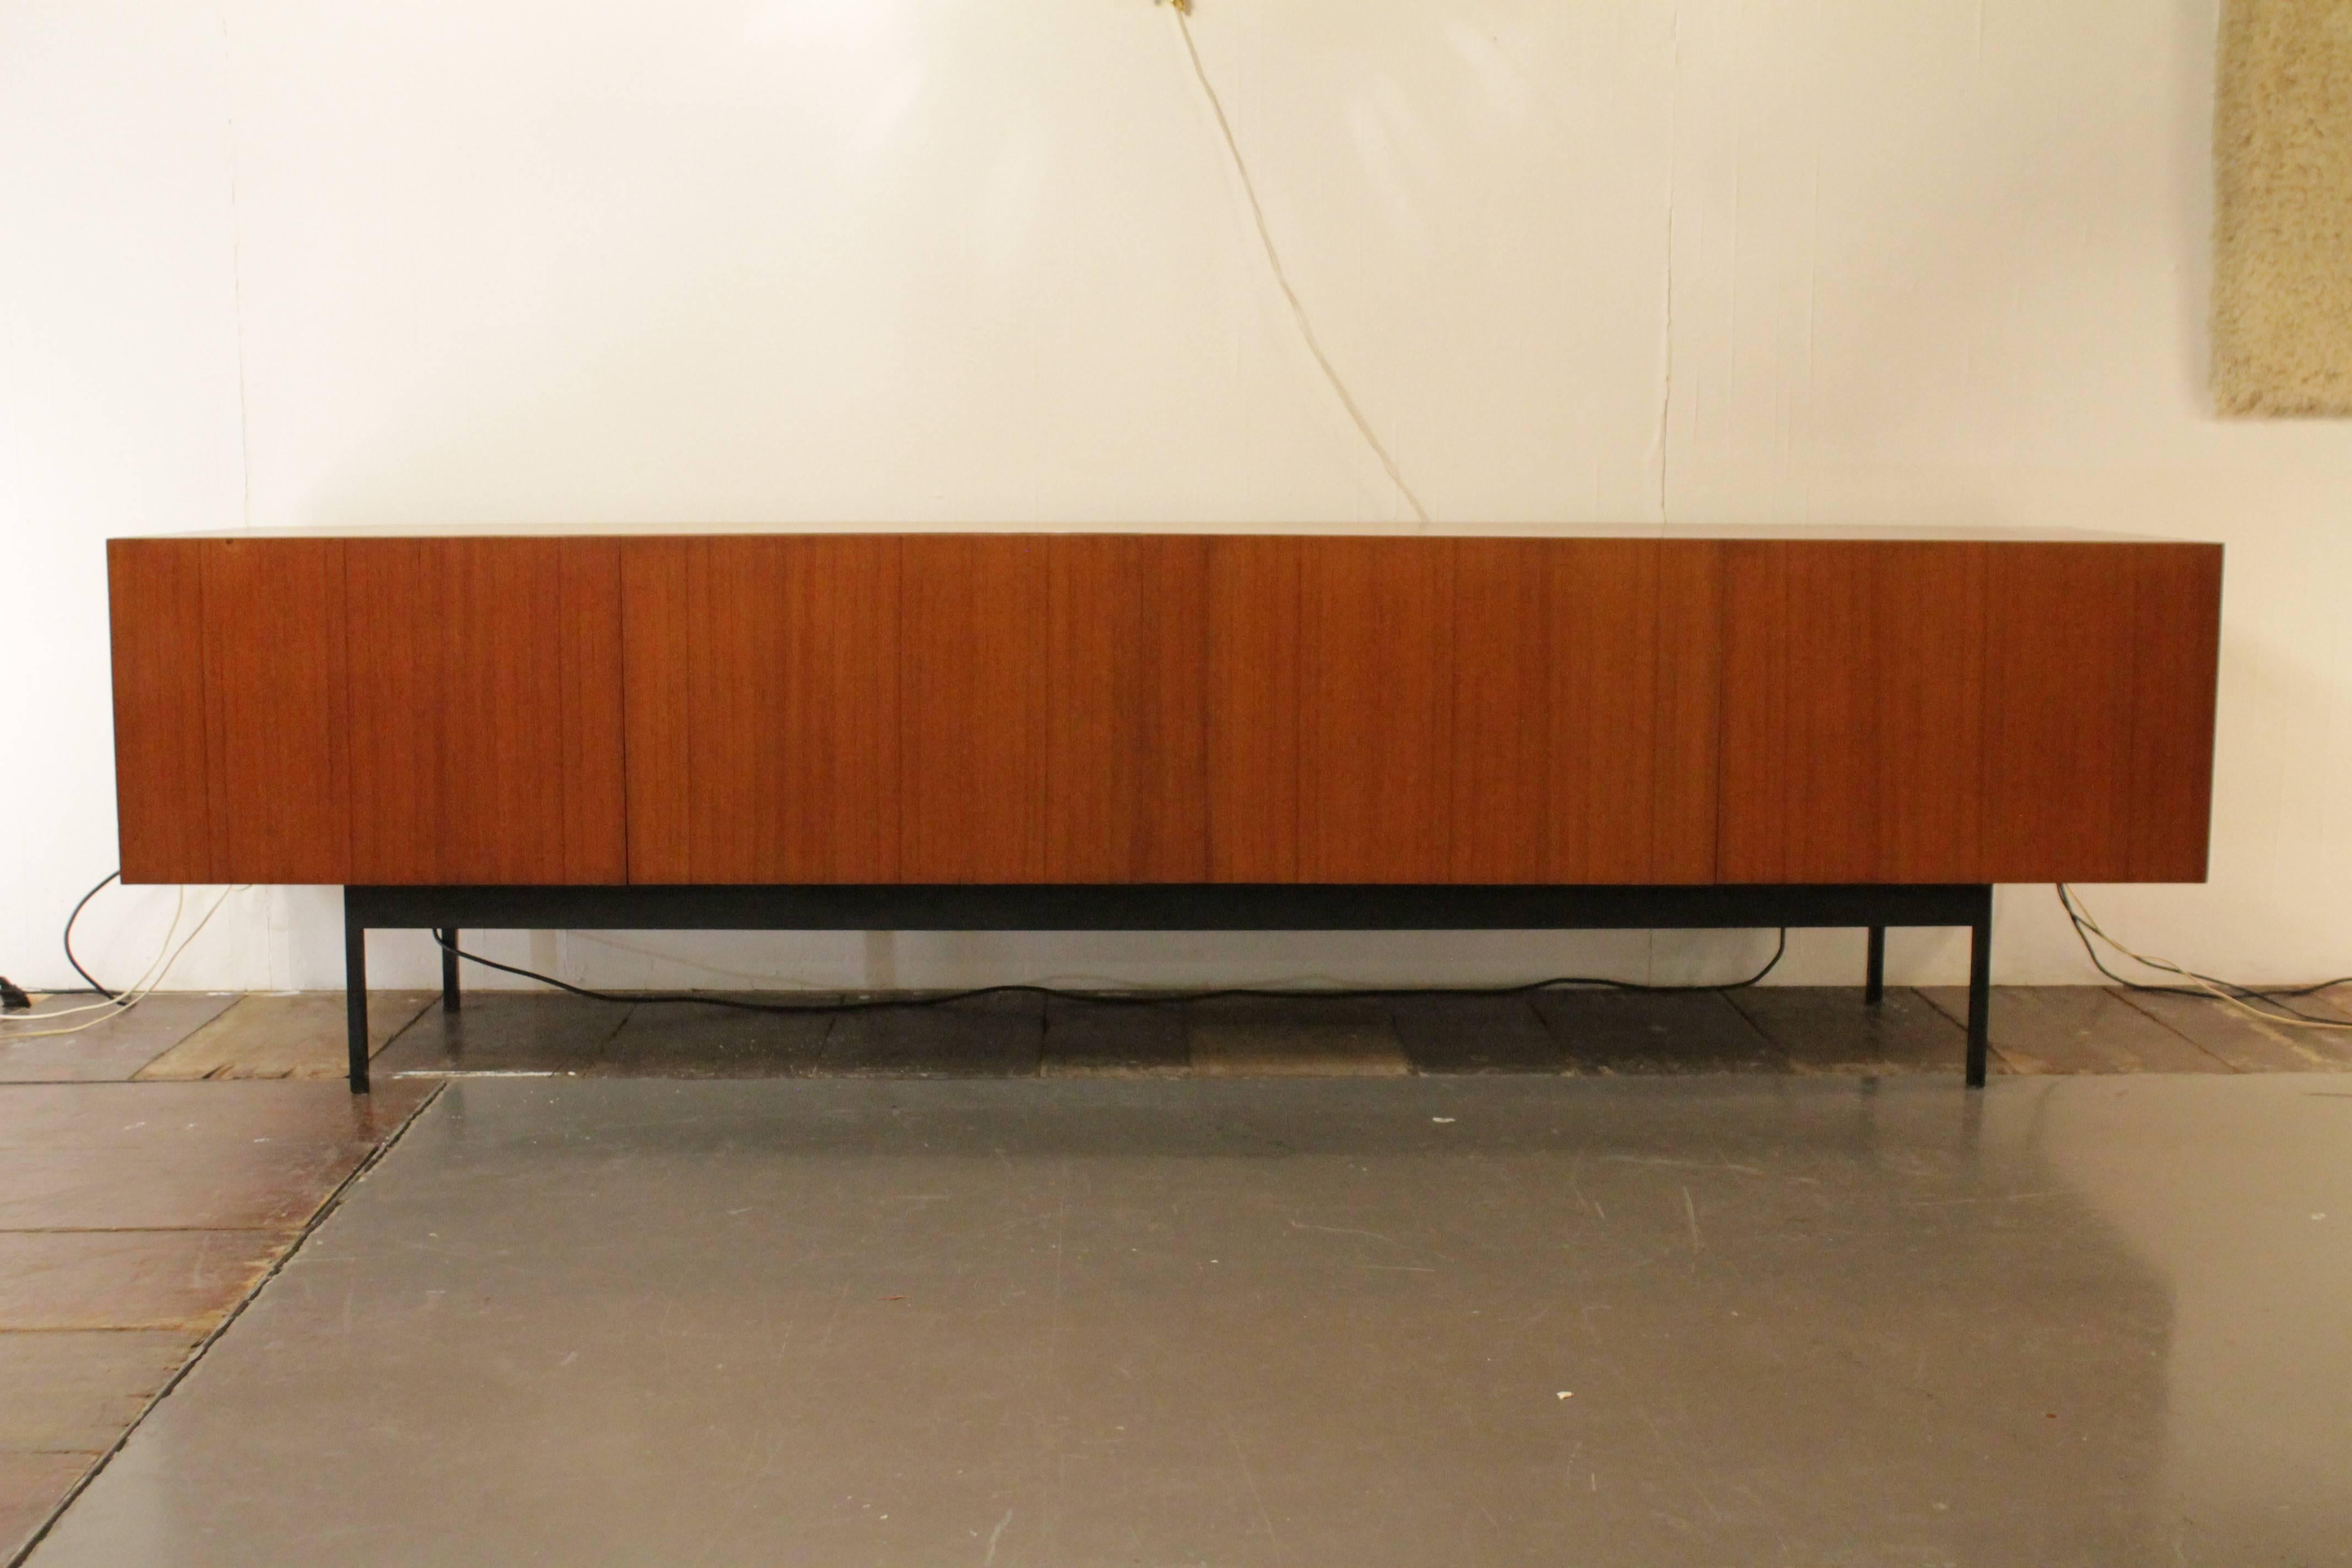 Minimalist teak sideboard by Dieter Waeckerlin produced by Ideal Heim, Switzerland, circa 1958.
 